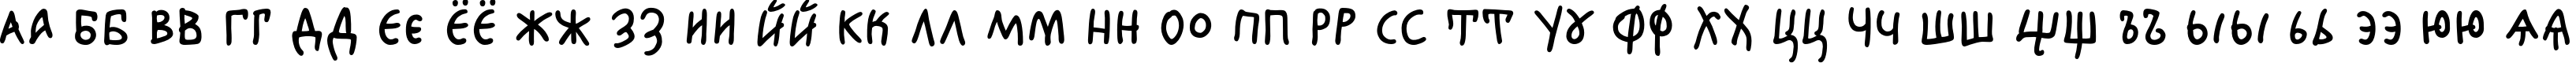 Пример написания русского алфавита шрифтом Agafia